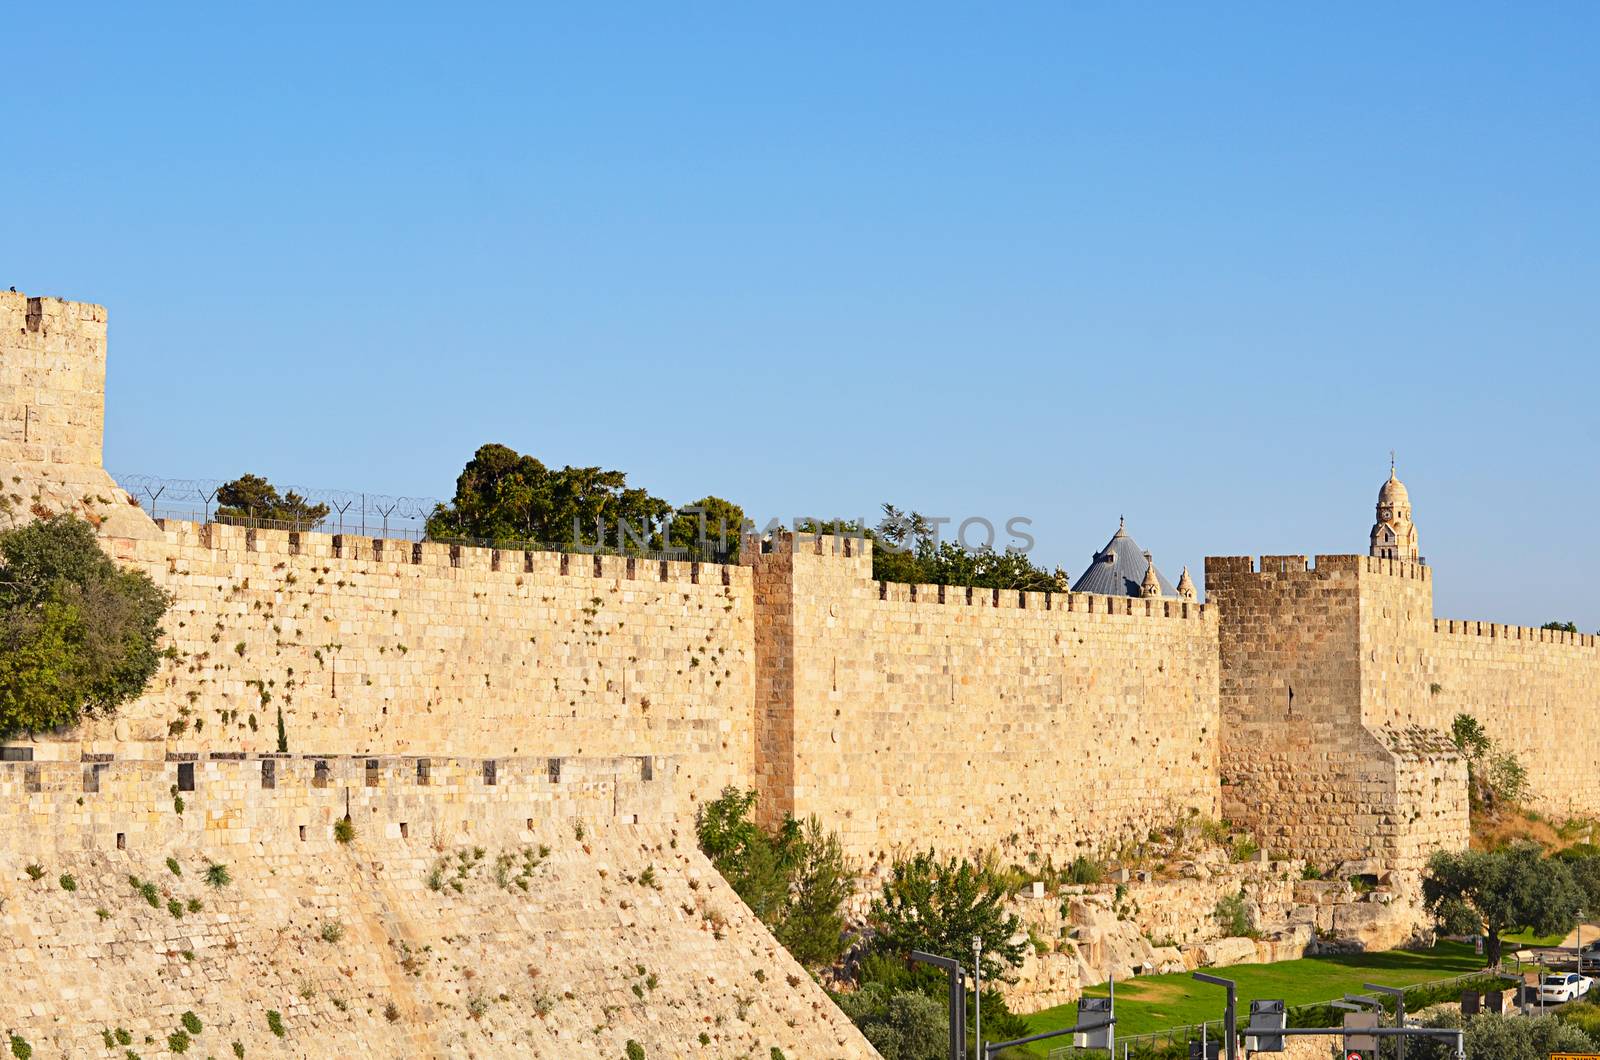 Wall in Jerusalem, Israel by SvetaVo